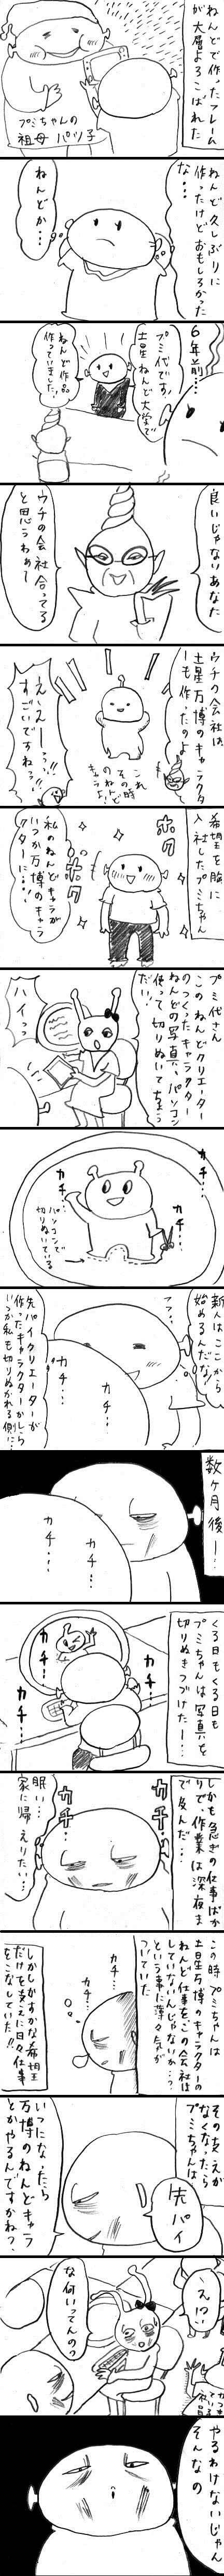 WEB漫画・土星人！プミちゃん「ねんどクリエイター・プミちゃん」